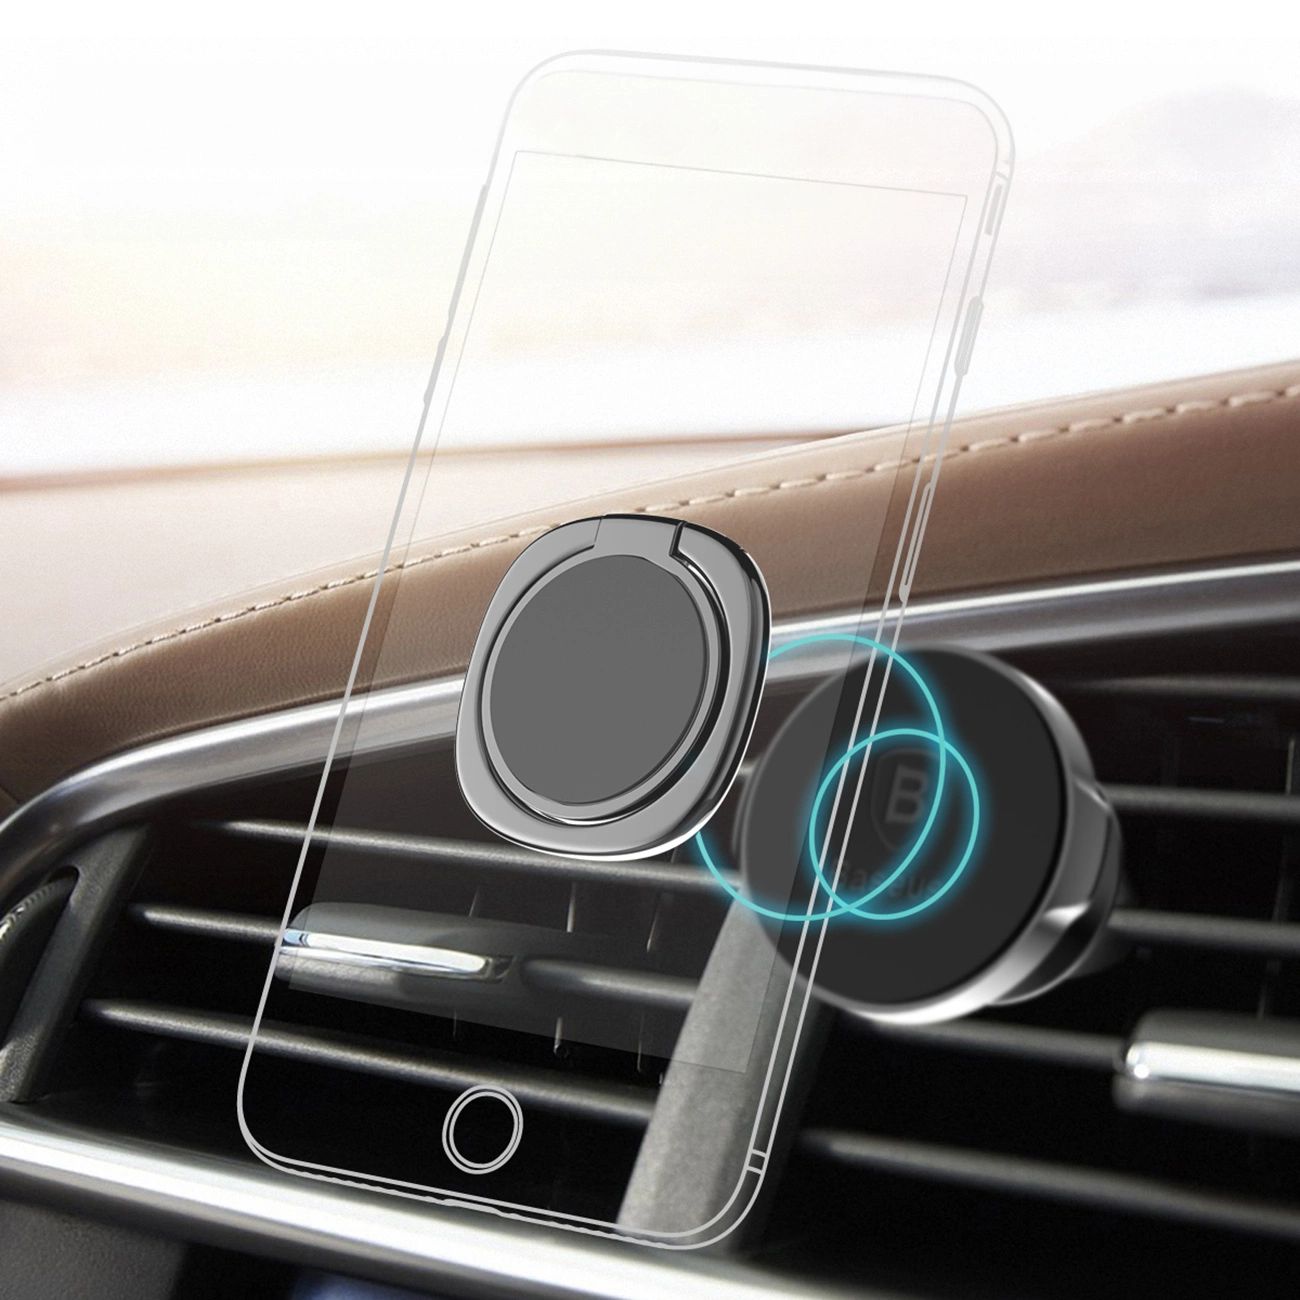 Wizualizacja mocowania srebrnego uchwytu Baseus Privity Ring do uchwytu telefonu w kratce wentylacyjnej samochodu